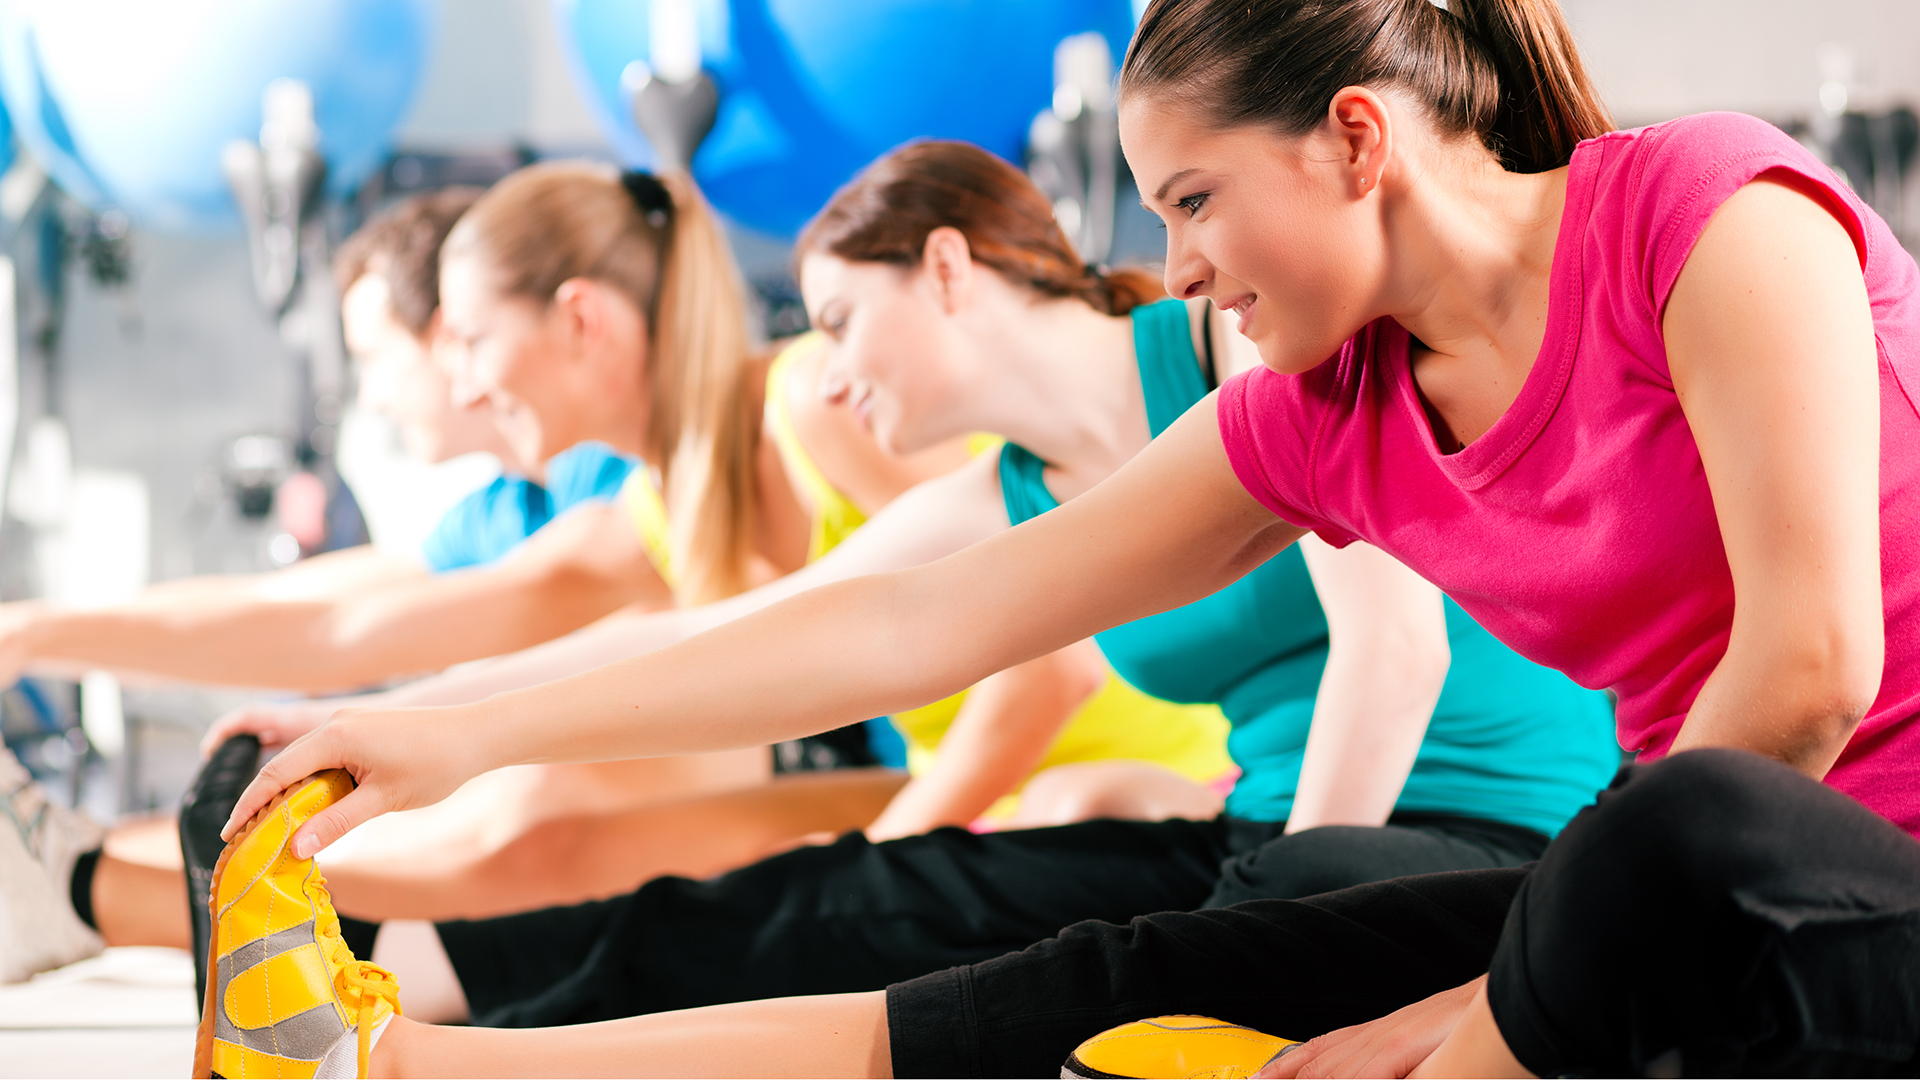 Muchos corredores van al gimnasio para trabajar con peso, pero muchos otros realizan pilates, yoga, funcional, entre otras prácticas  (iStock)